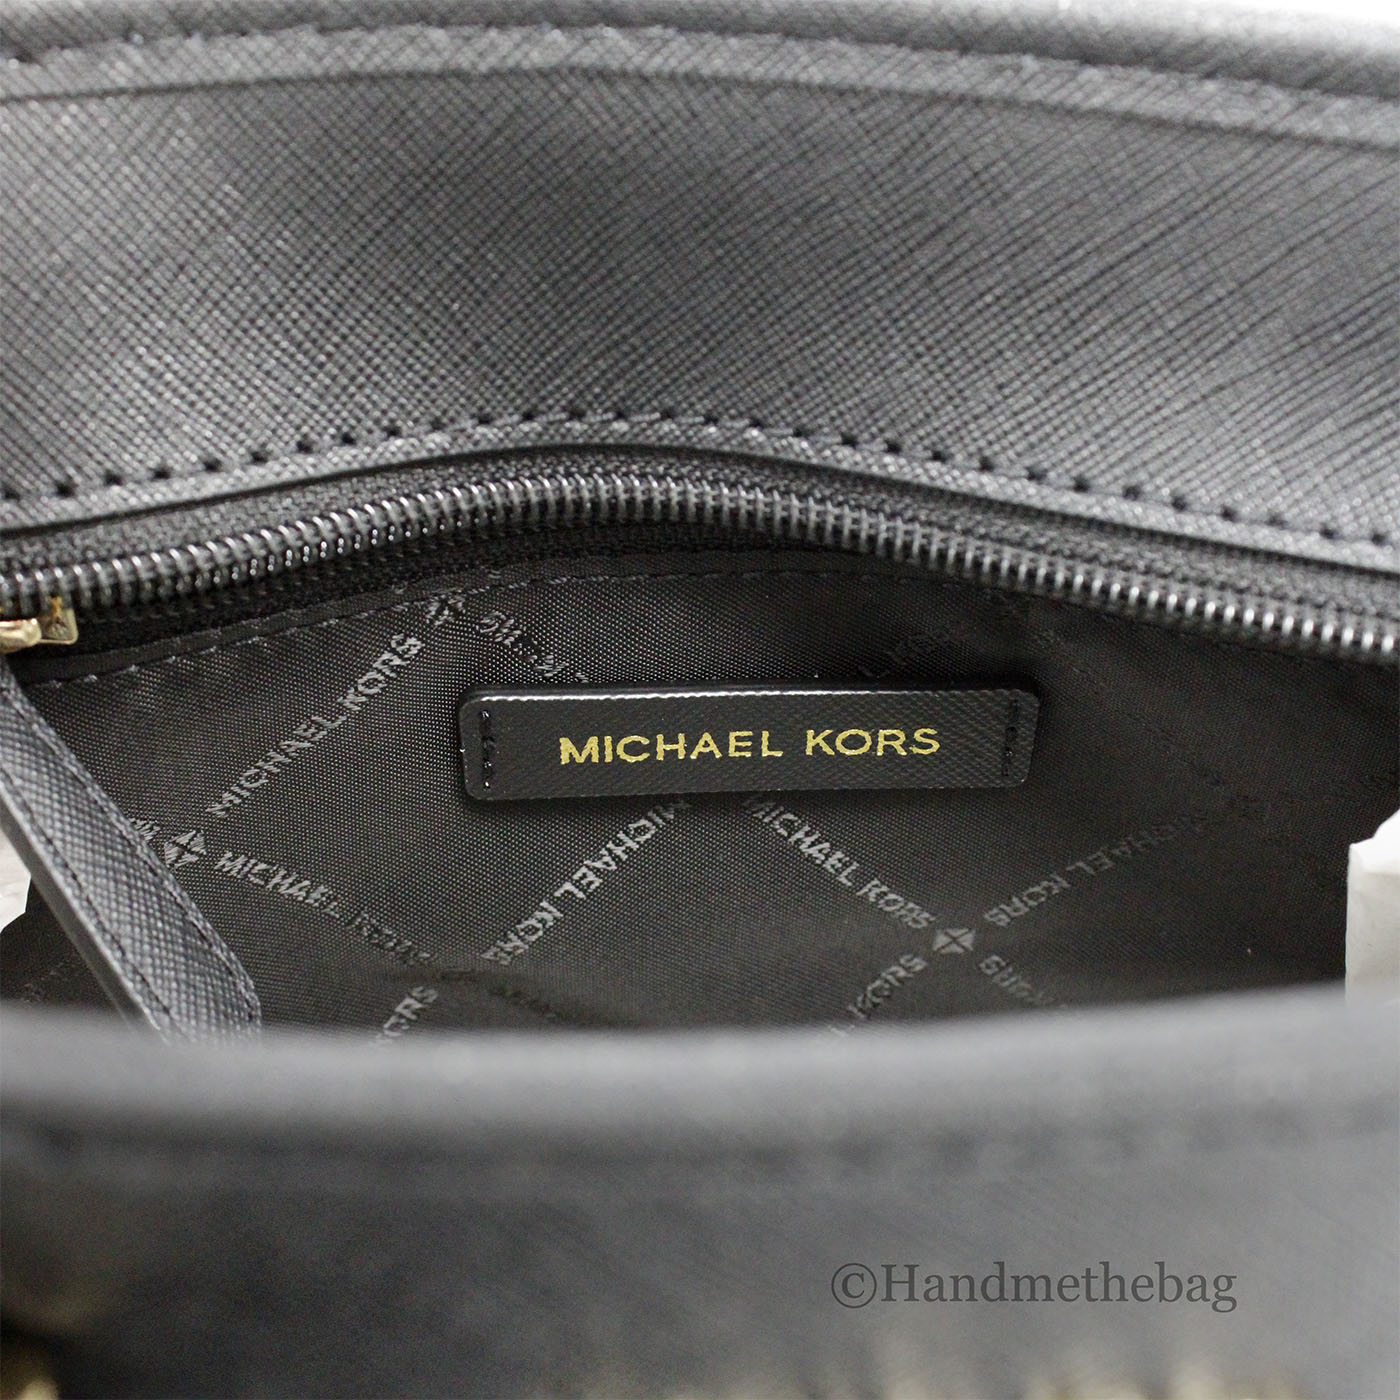 Michael Kors XS Black Carryall Tote Convertible Bag